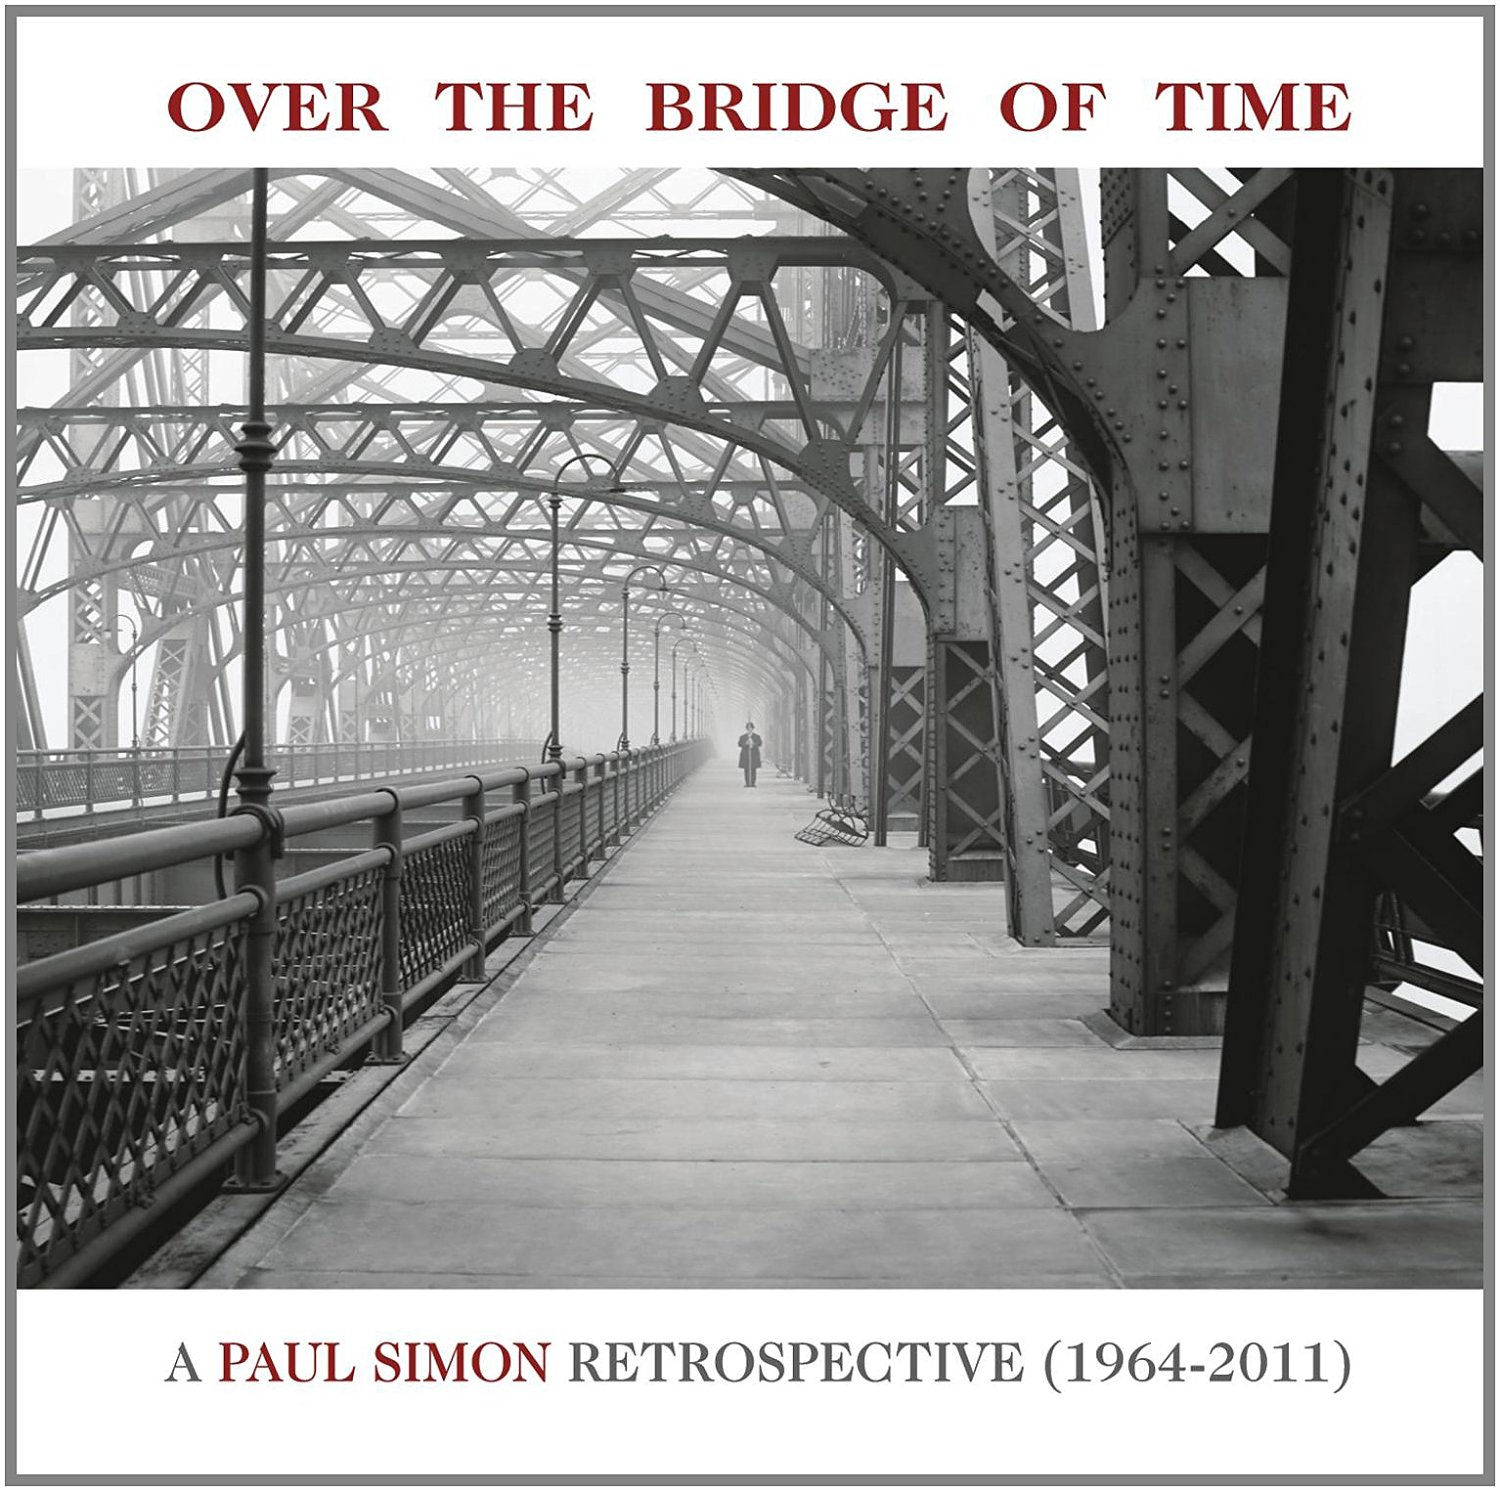 Paul Simon - Over The Bridge Of Time: A Paul Simon Retrospective 1964-2011 (2013) [AcousticSounds FLAC 24bit/96kHz]